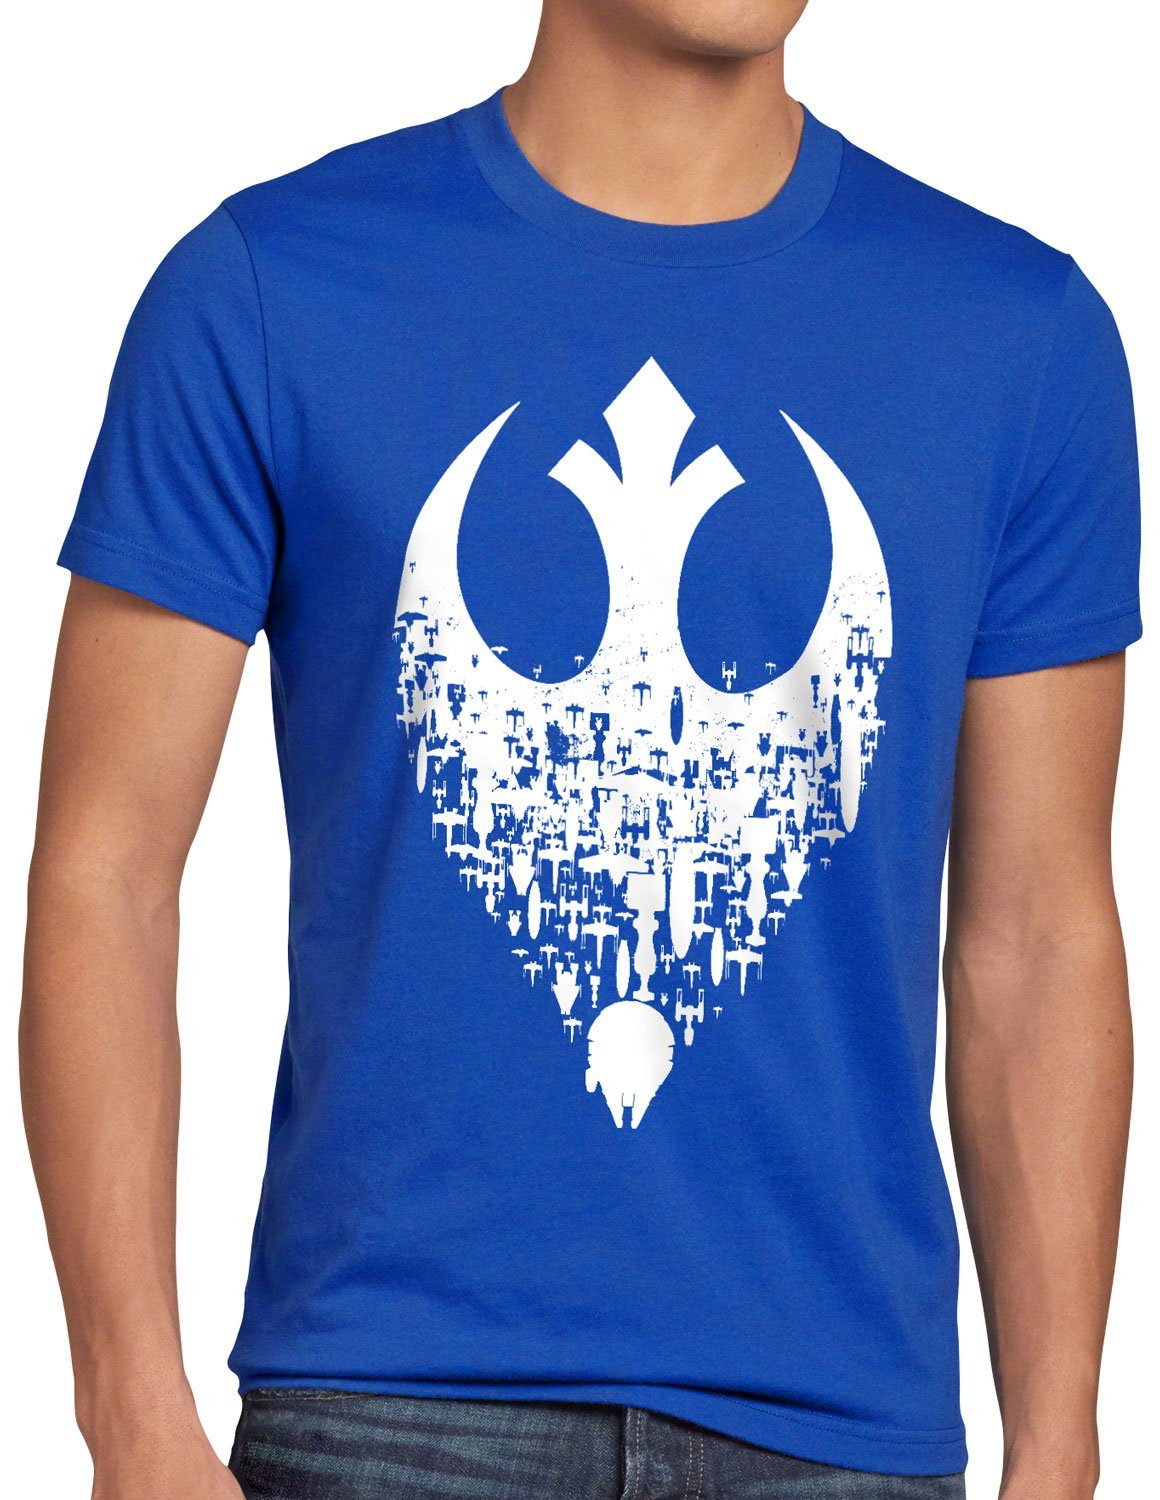 Übermacht Print-Shirt blau xwing Herren yavin Rebellen-Allianz style3 T-Shirt ywing